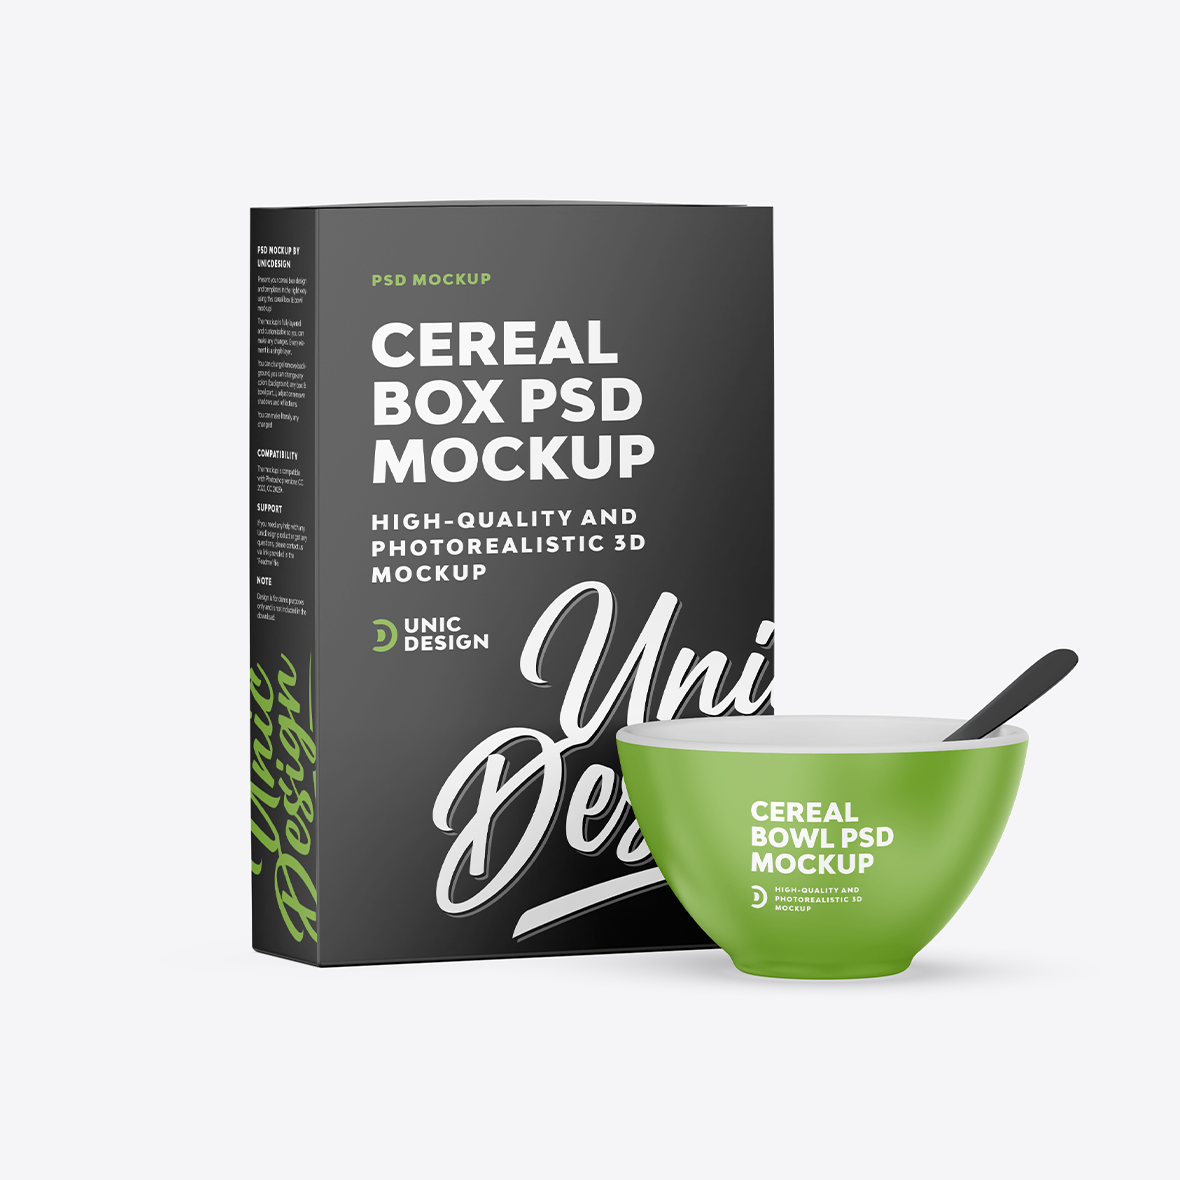 Cereal Box & Bowl Mockup